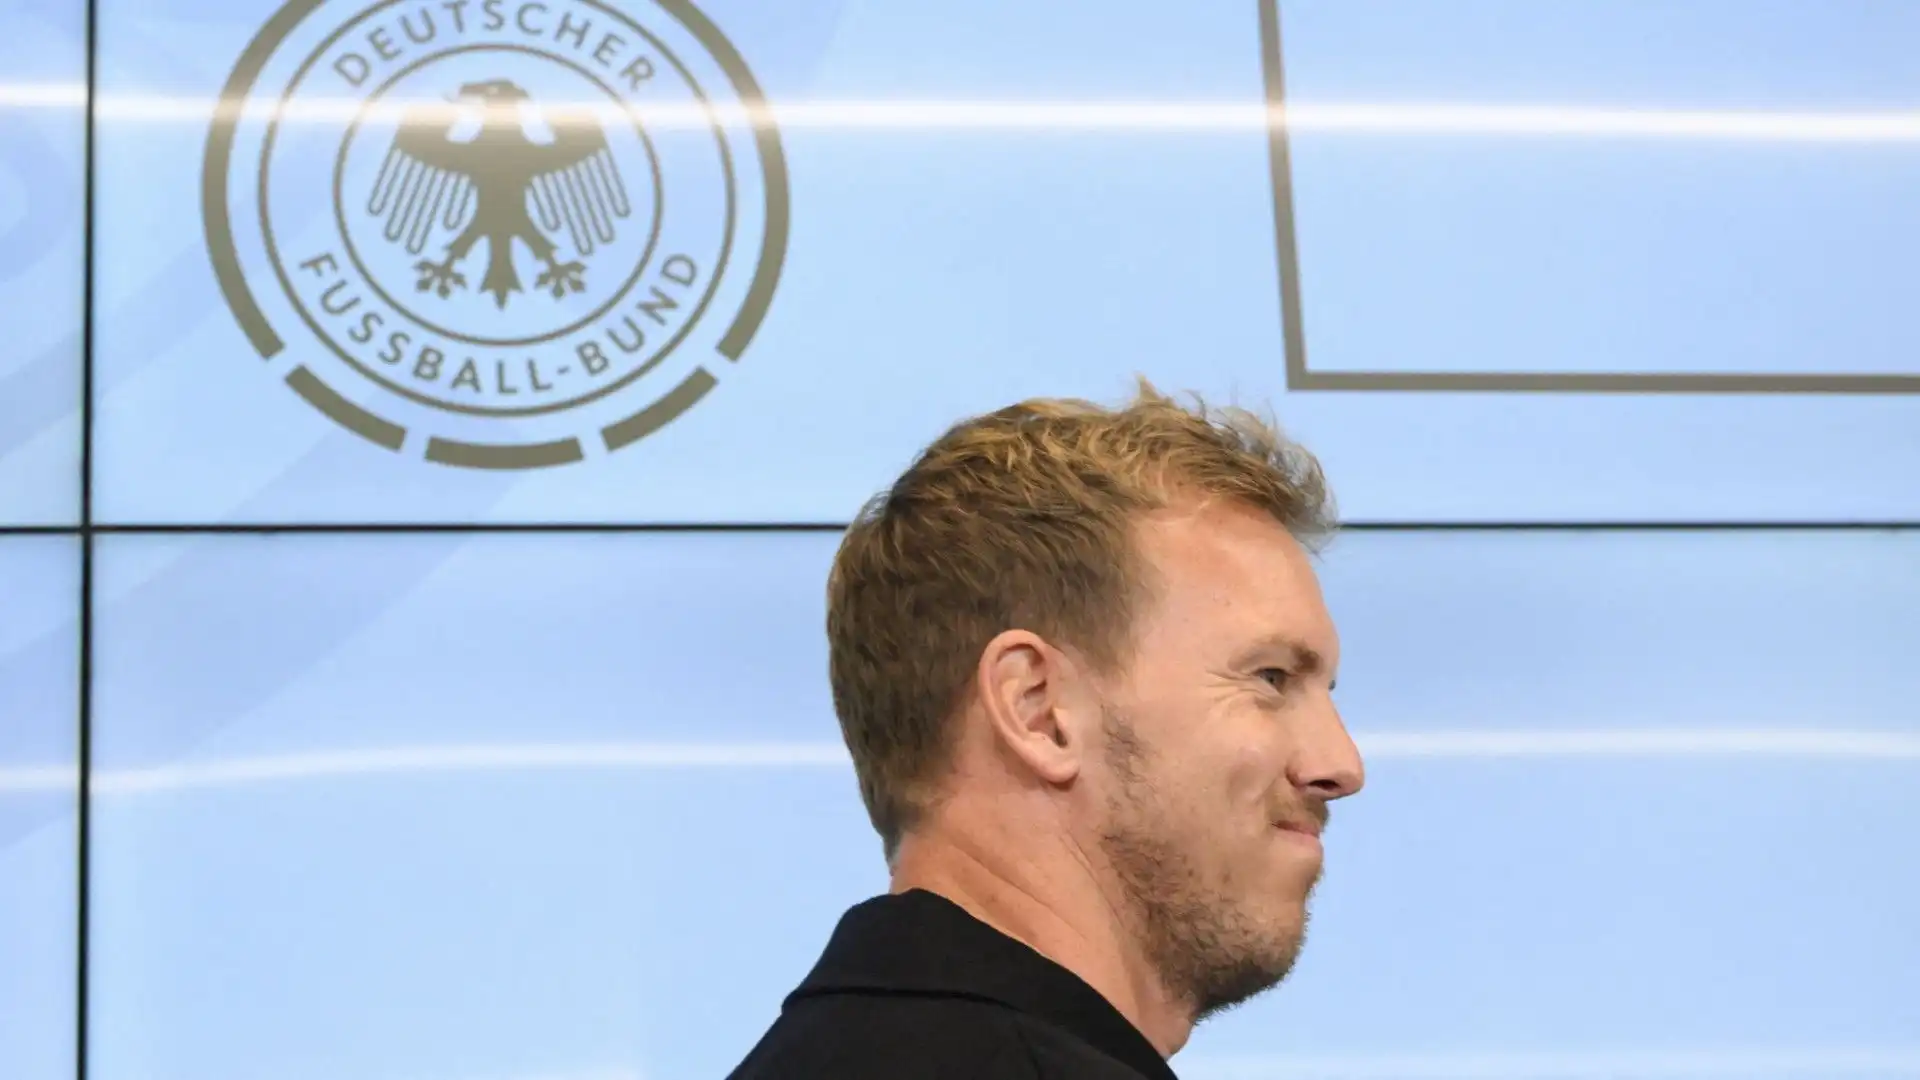 L'ex allenatore della nazionale tedesca è stato esonerato dopo la sonora sconfitta contro il Giappone per 4-1